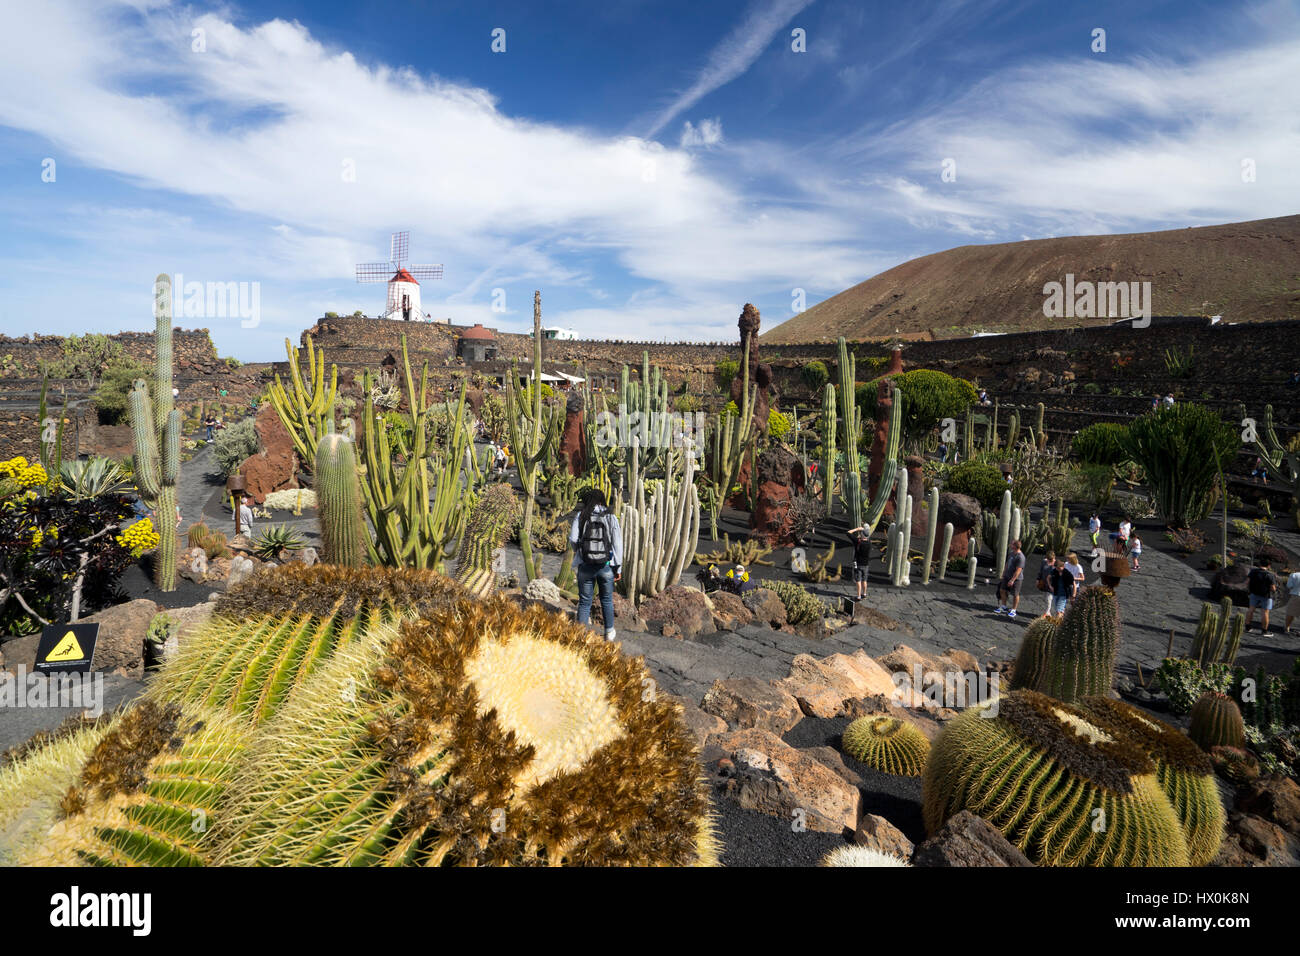 Jardín de Cactus, una perfetta combinazione di arte dei giardini e architettura, è uno dei progetti più recenti di Cesar Manrique a Lanzarote Foto Stock